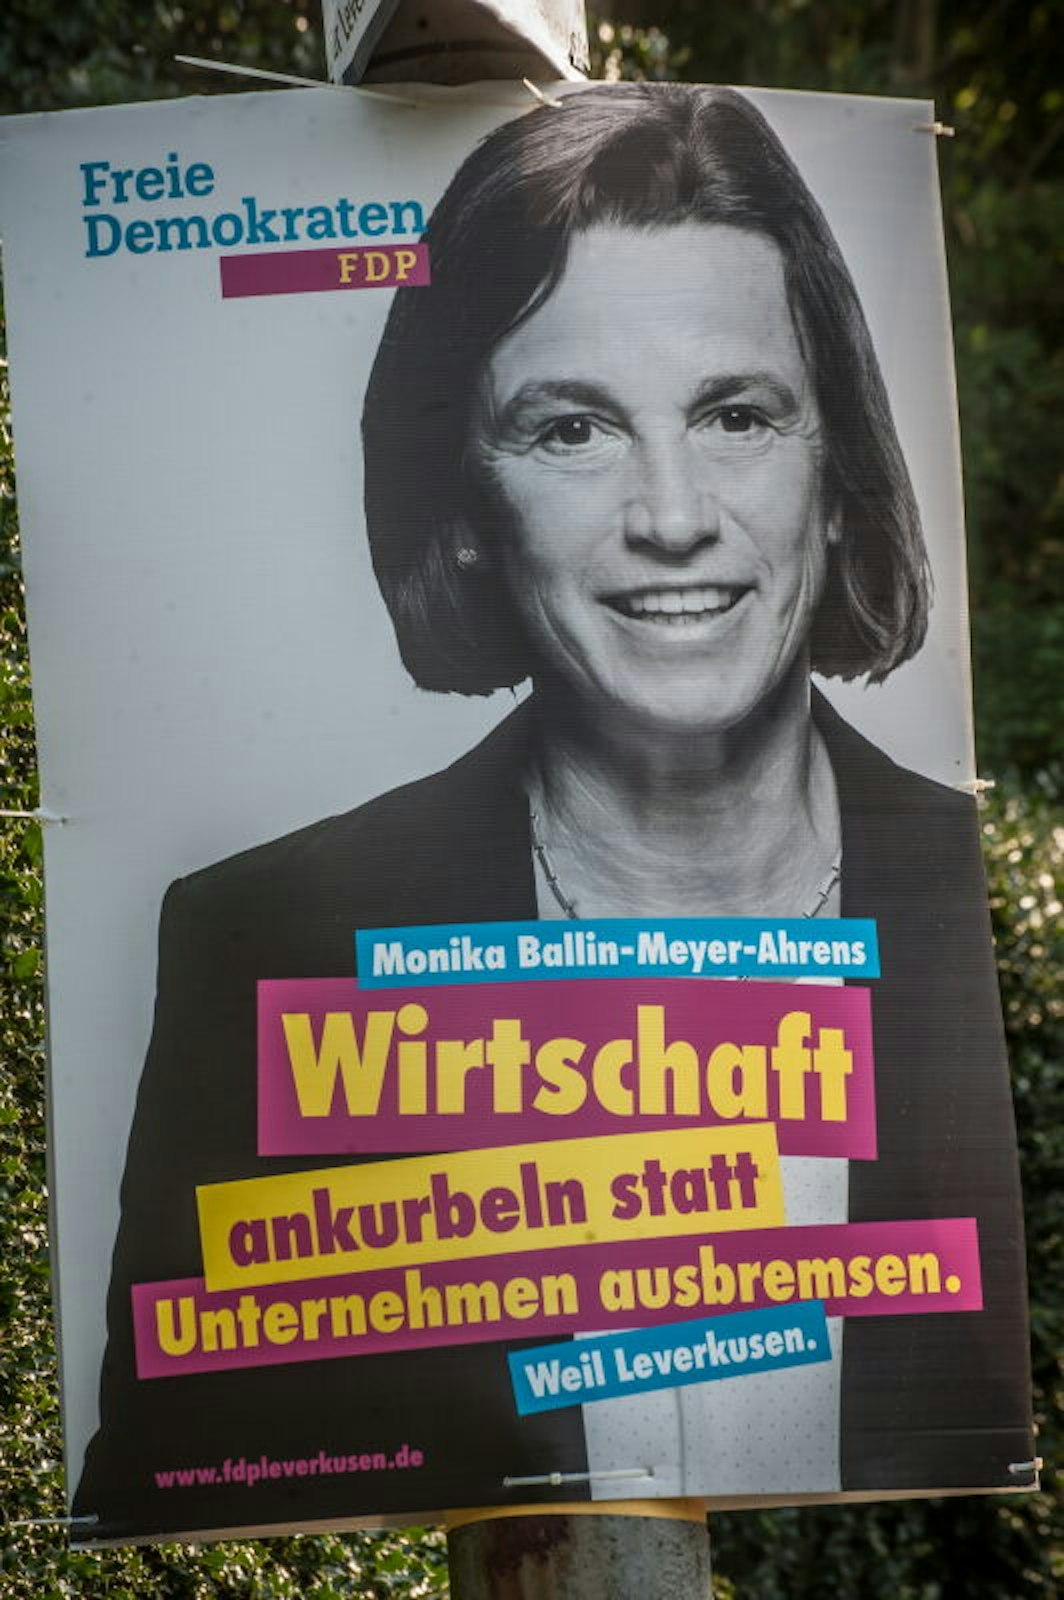 Ein Hauptthema im Wahlkampf der FDP ist die lokale Wirtschaft.